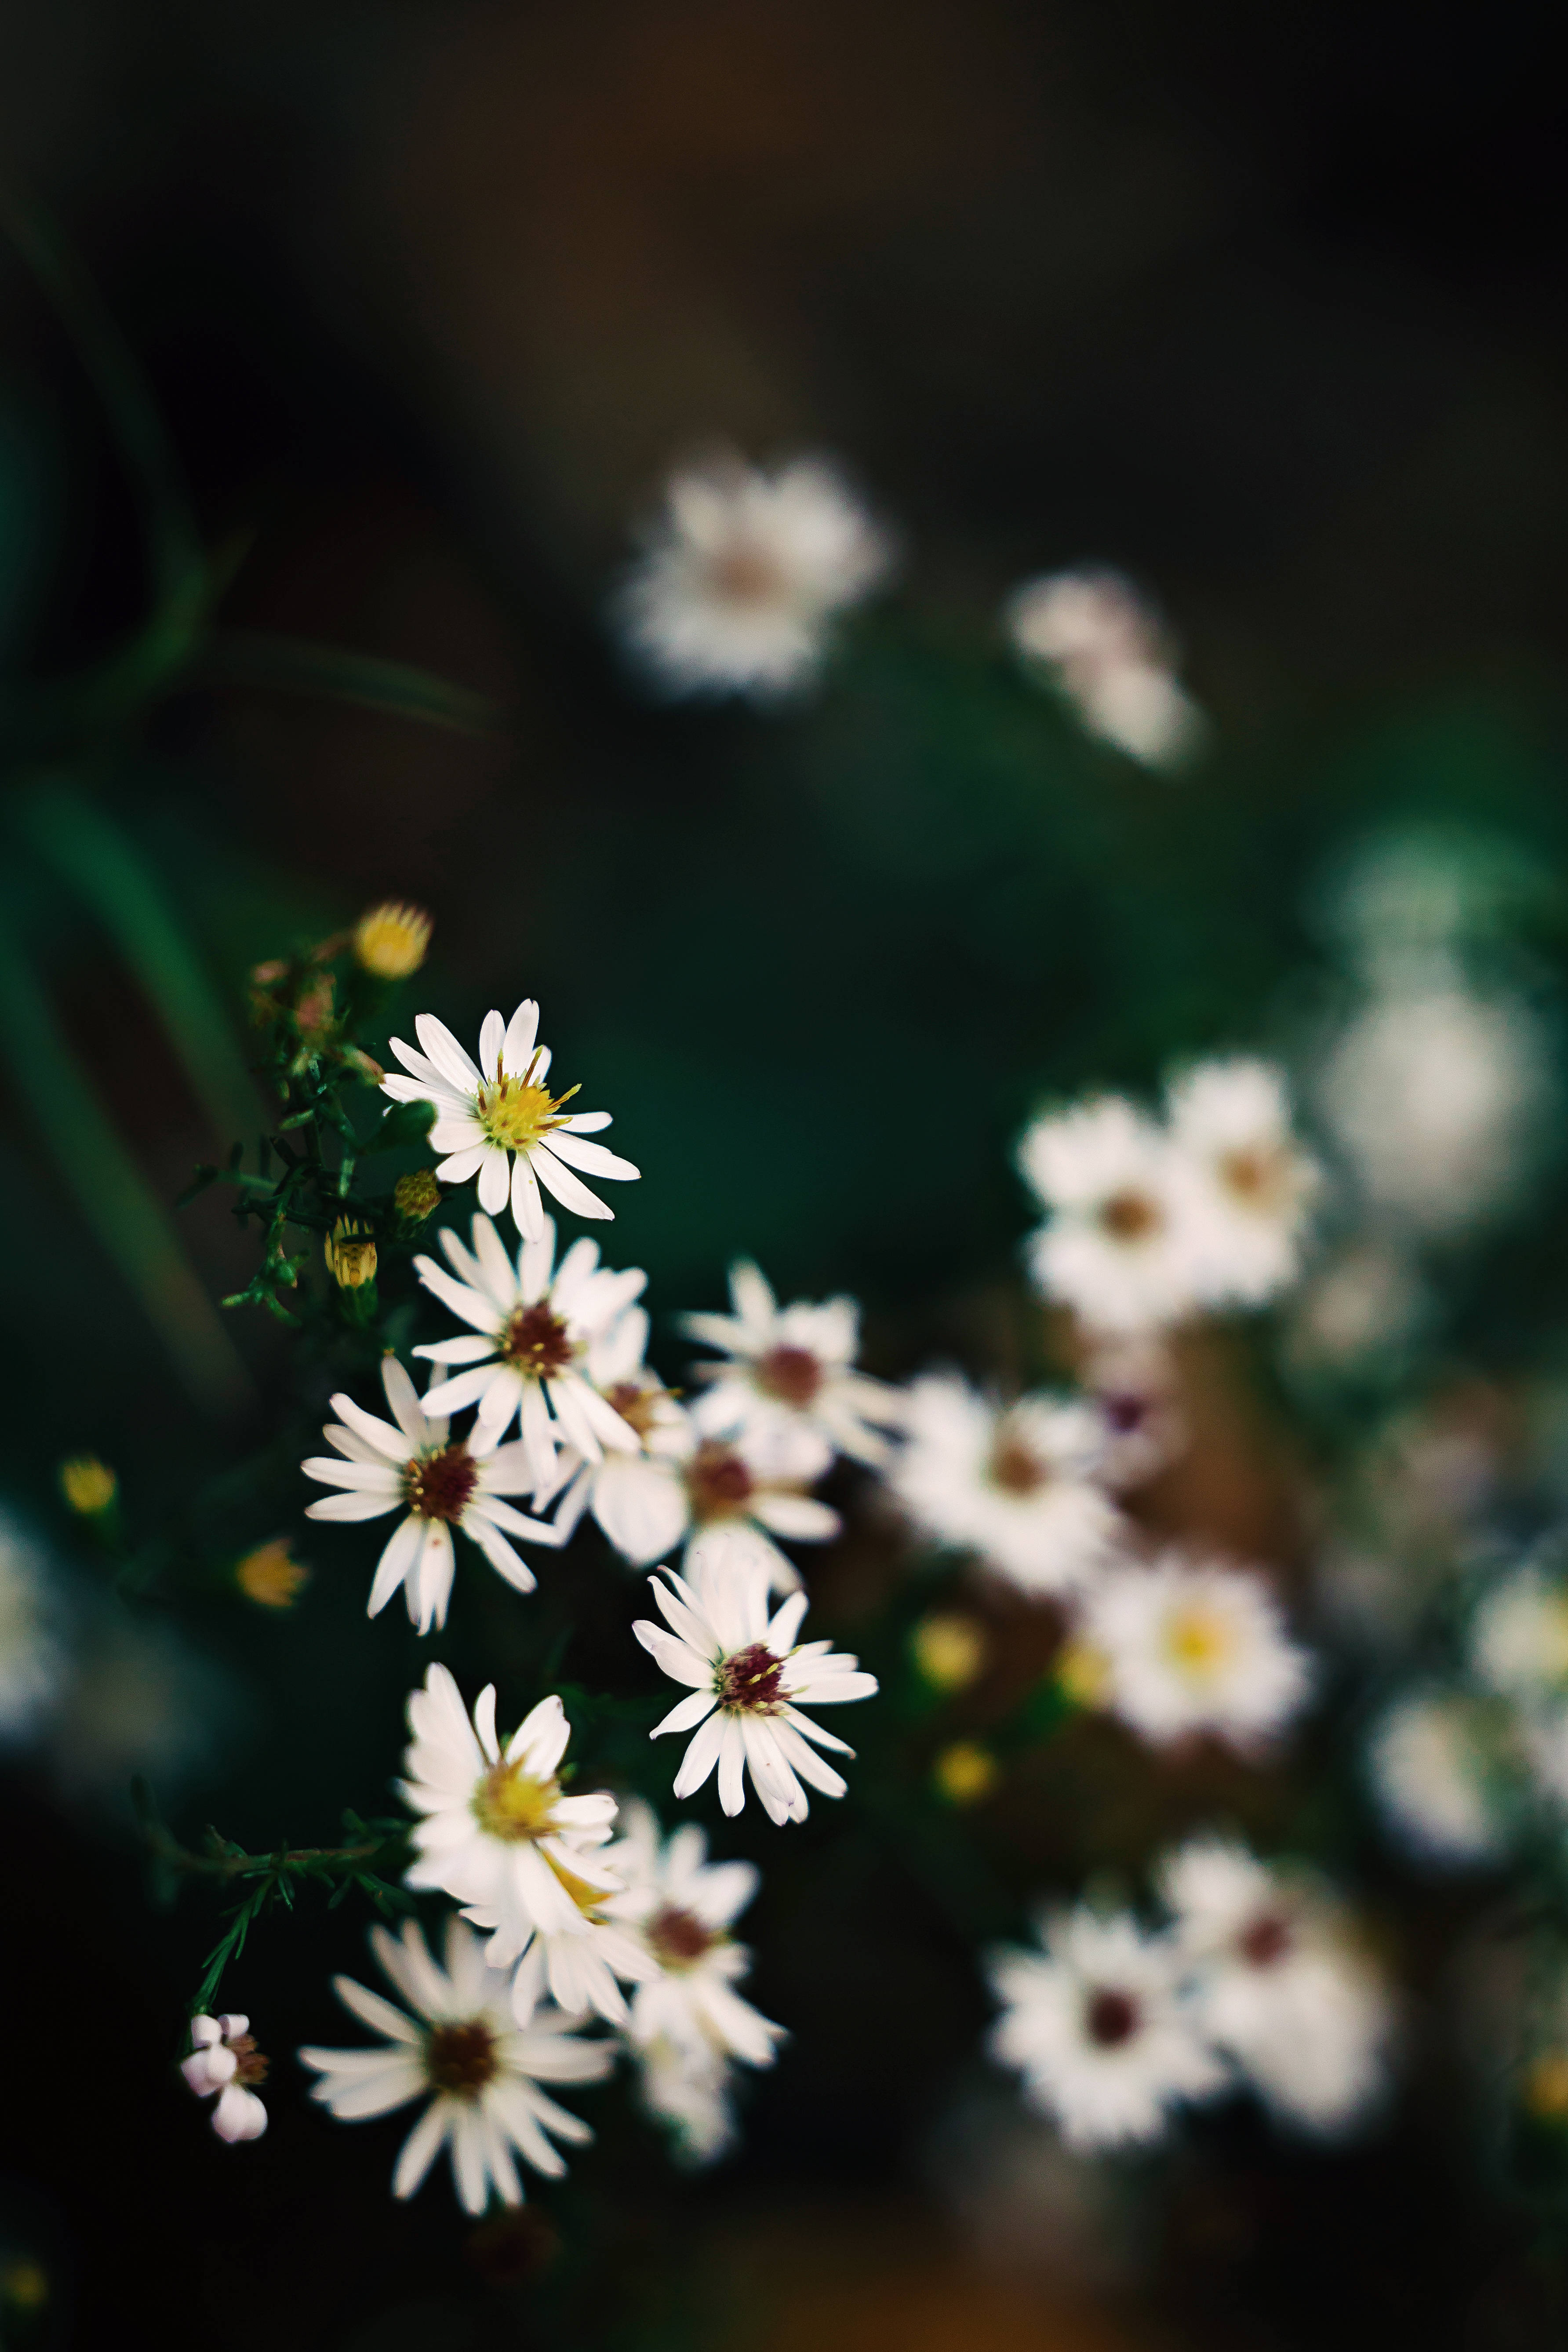 Với màu sắc trang nhã và đơn giản, hoa trắng là biểu tượng của sự tinh khiết, nhẹ nhàng và thanh thoát. Hình ảnh về hoa trắng sẽ khiến cho bạn cảm nhận được vẻ đẹp và thanh nhã của các loài hoa này, tạo cảm giác thư giãn và yên bình.